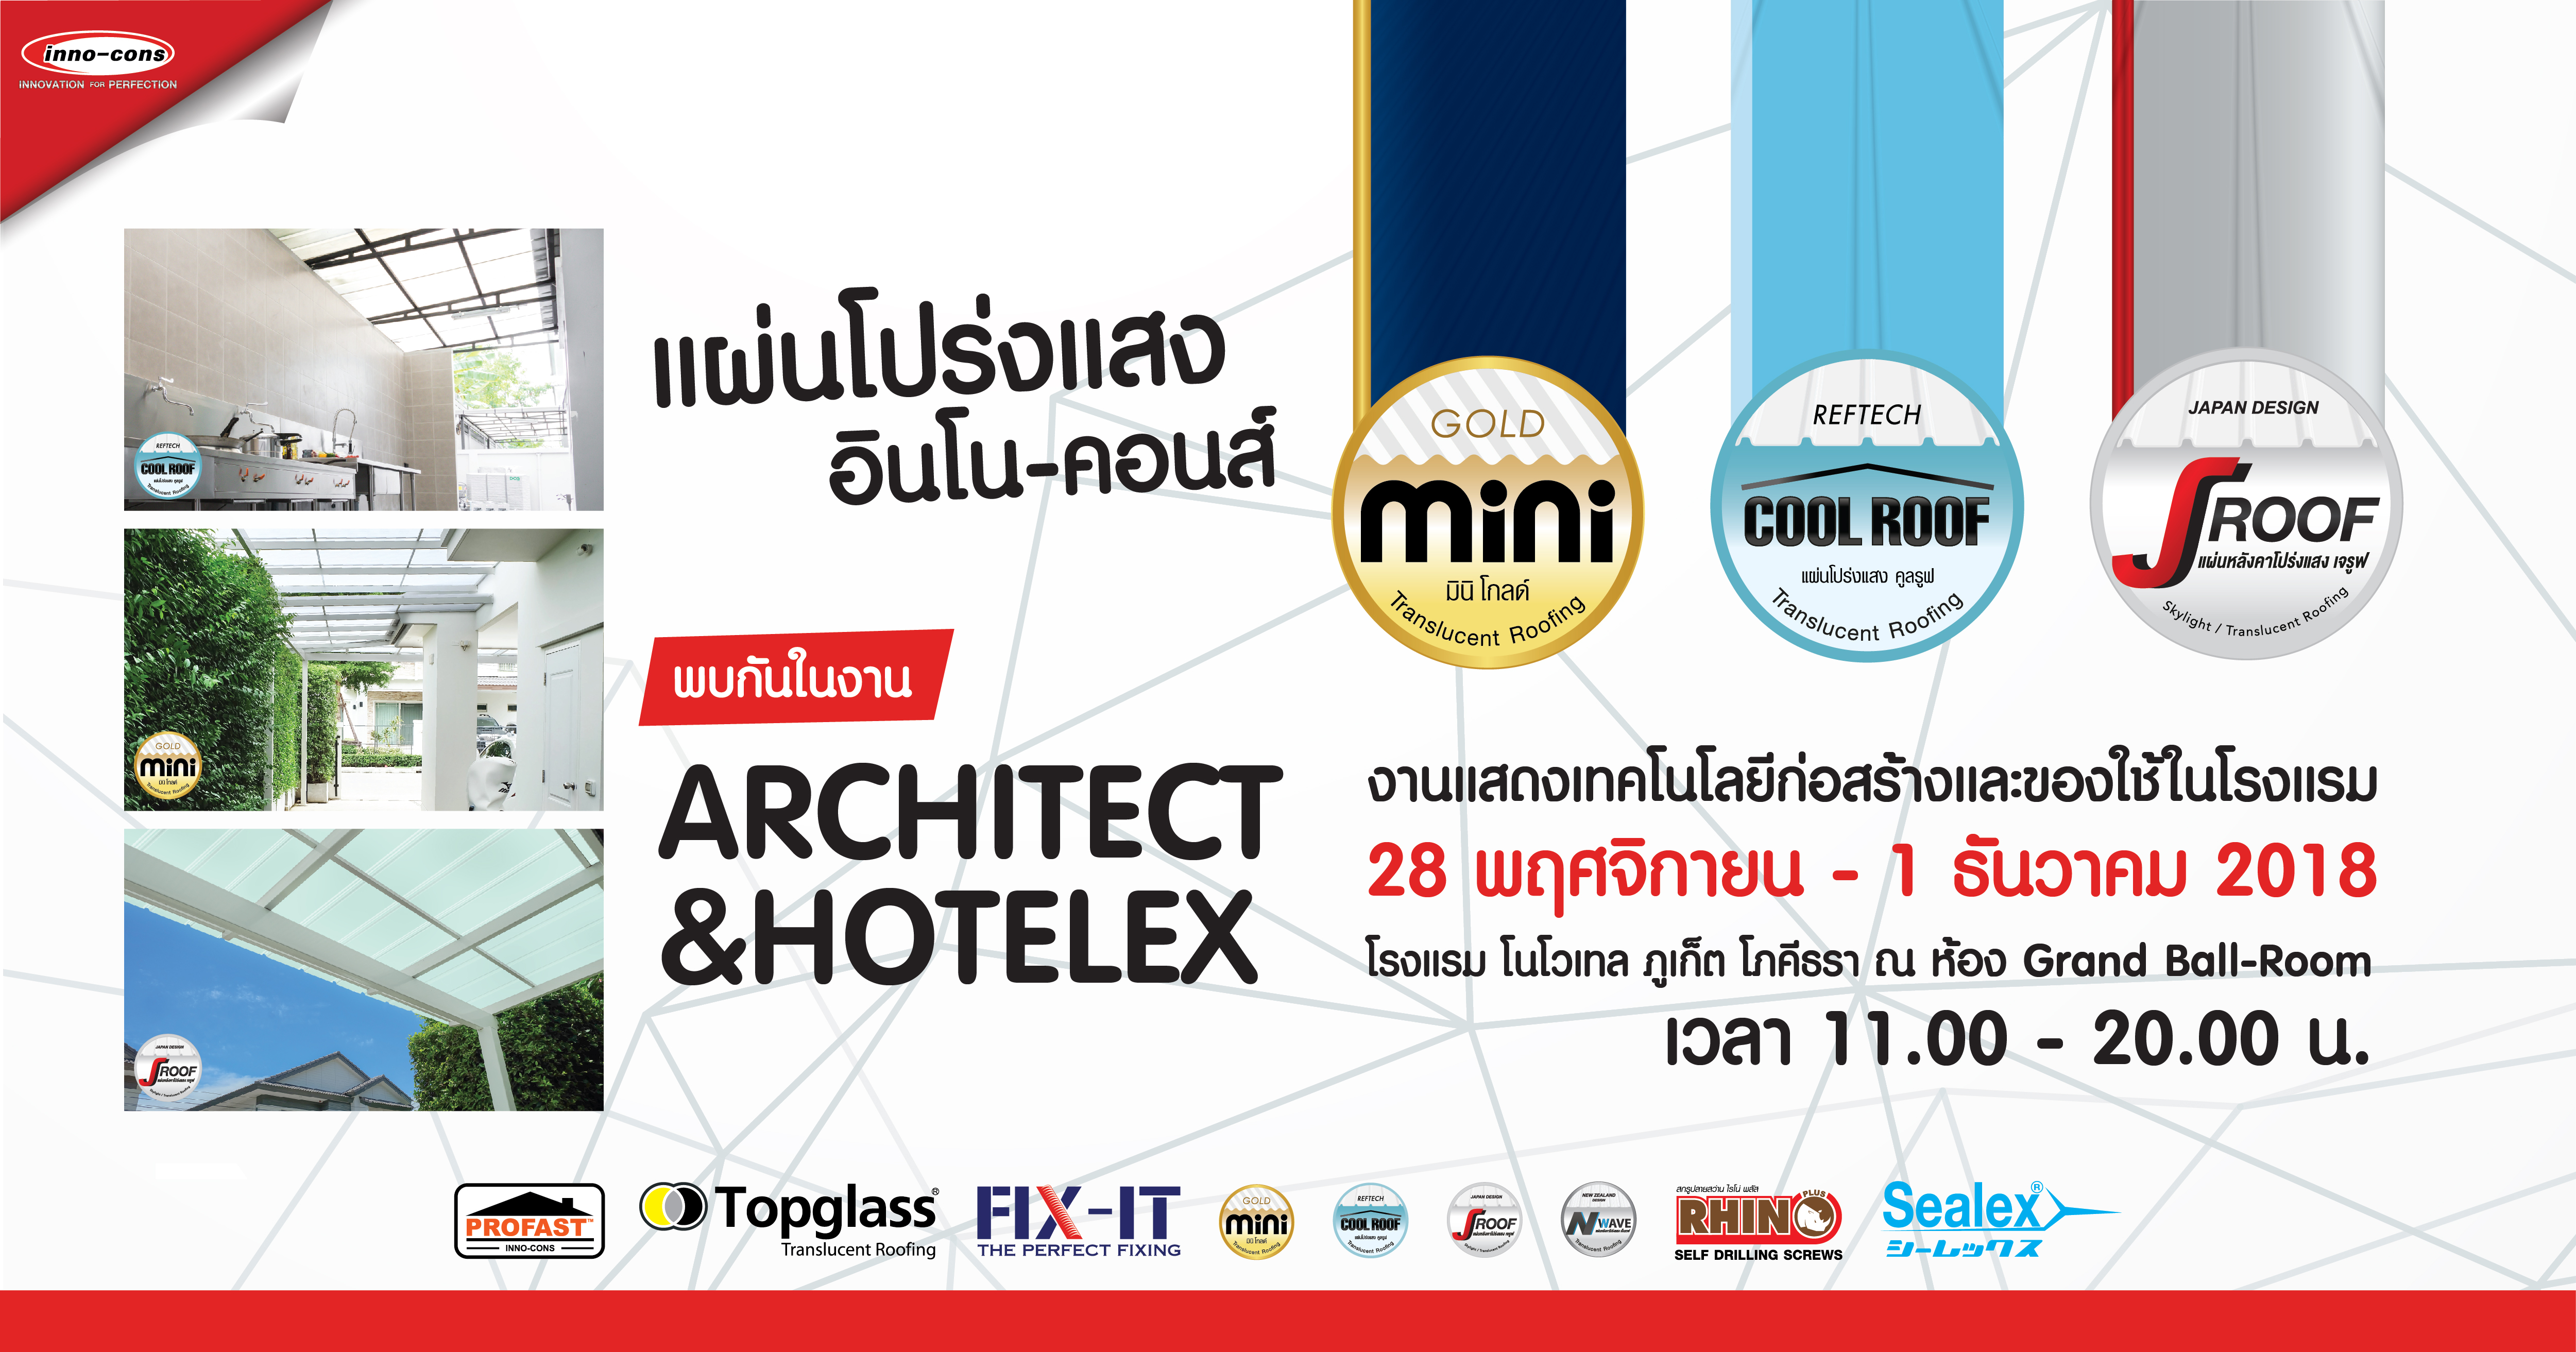 พบกับบูธแผ่นกันสาดโปร่งแสง มินิ โกลด์ ได้ที่งาน "Architect & Hotelex Phuket 2018"